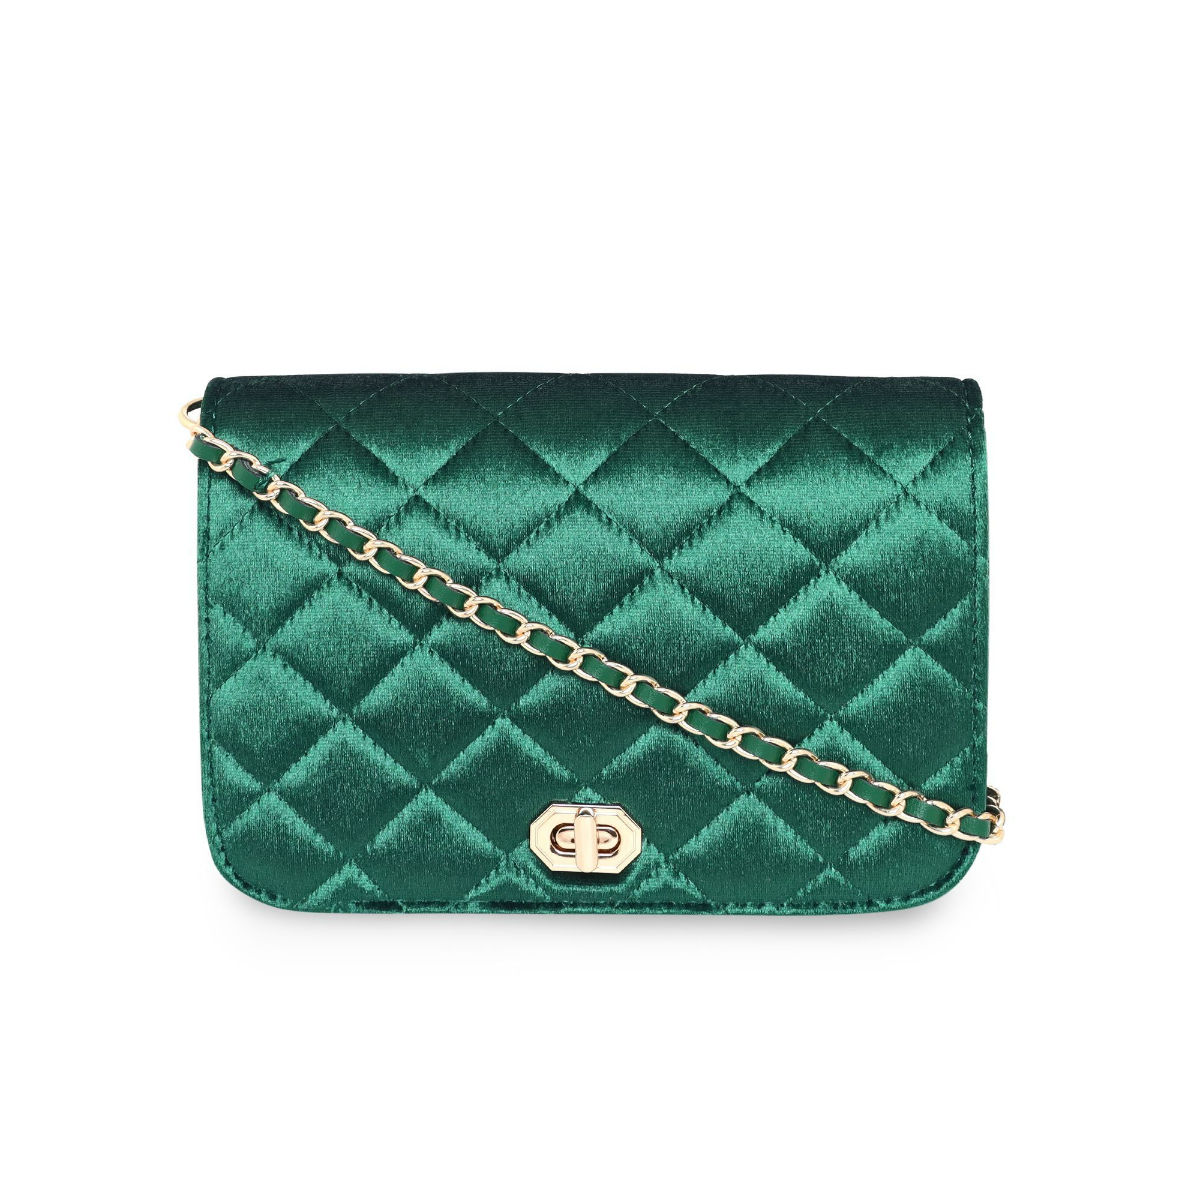 Buy Green Handbags for Women by Haute Sauce Online | Ajio.com